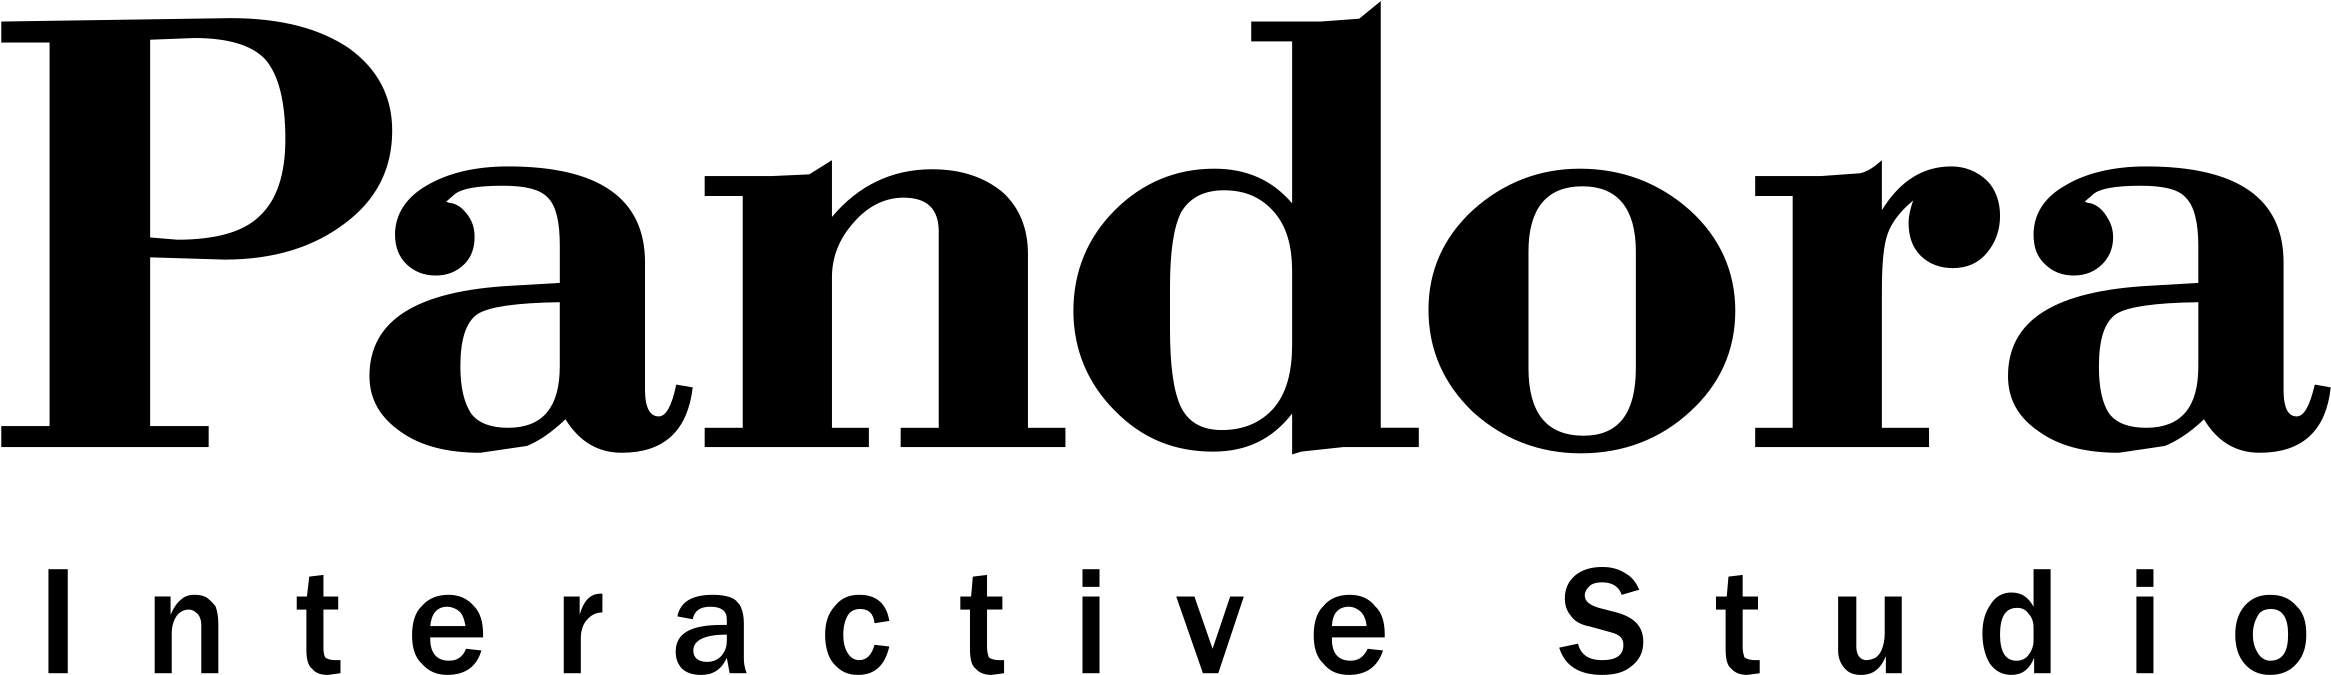 Pandora Logo Png 2331 X 675